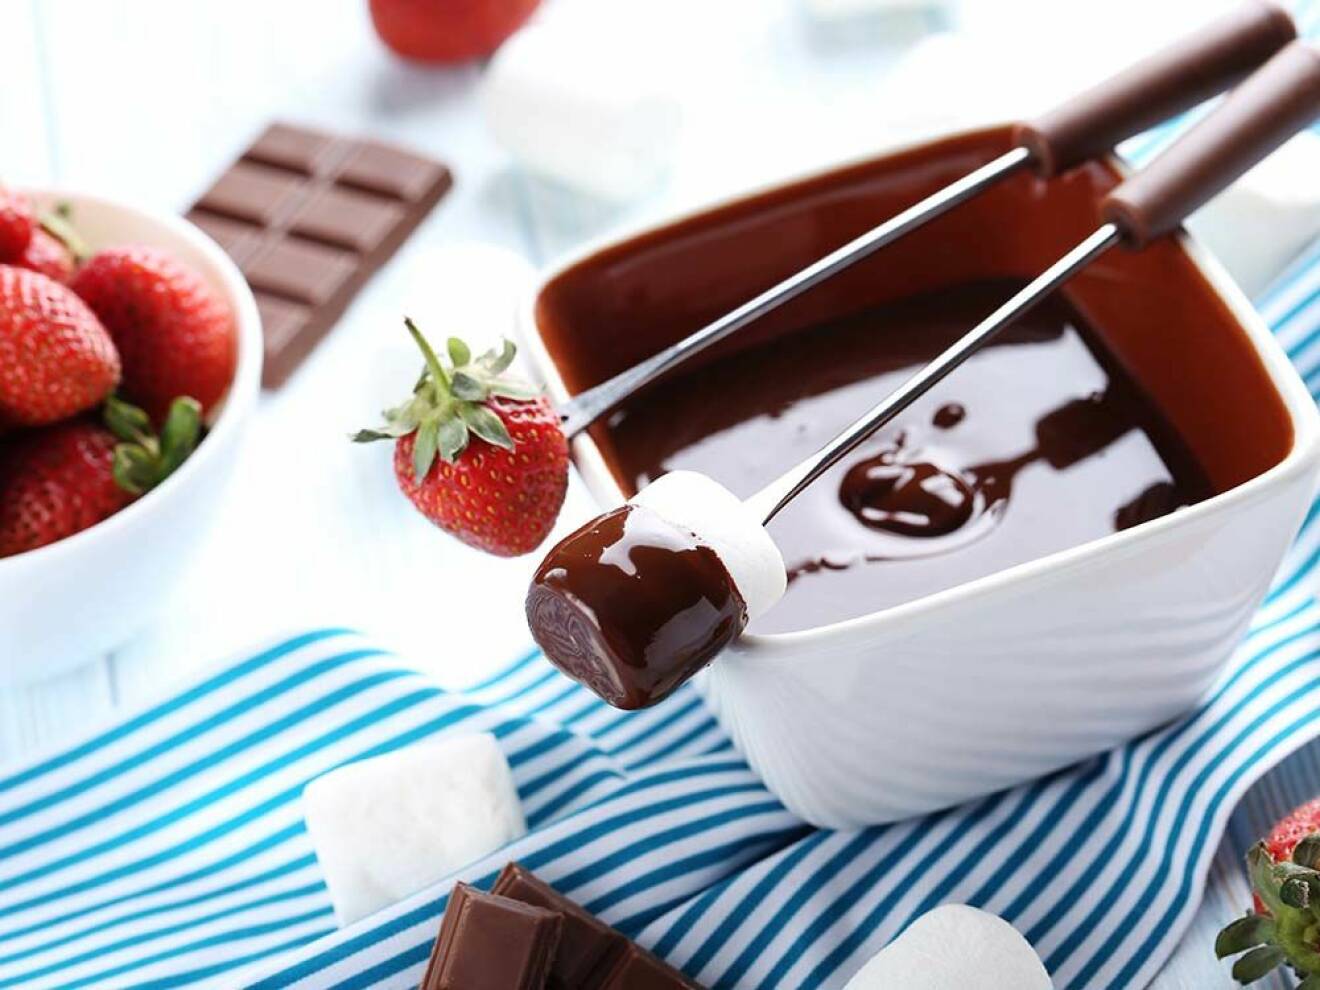 Chokladfondue med jordgubbar och marshmallows. Foto: Shutterstock